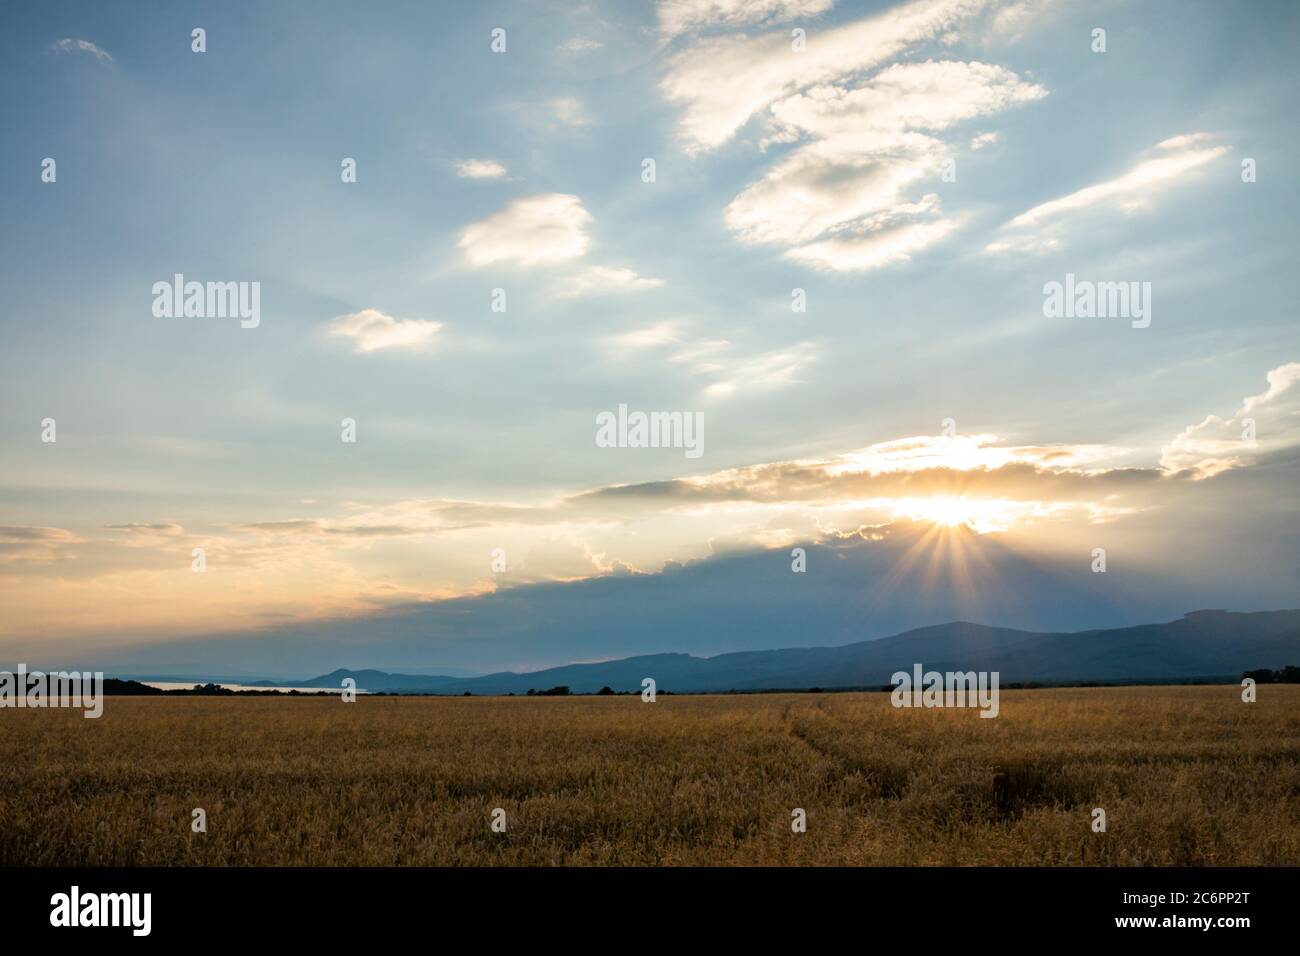 Raggi del sole tramontato attraverso le nuvole vicino al lago Zemplinska Sirava. Slovacchia orientale, Europa. Foto Stock